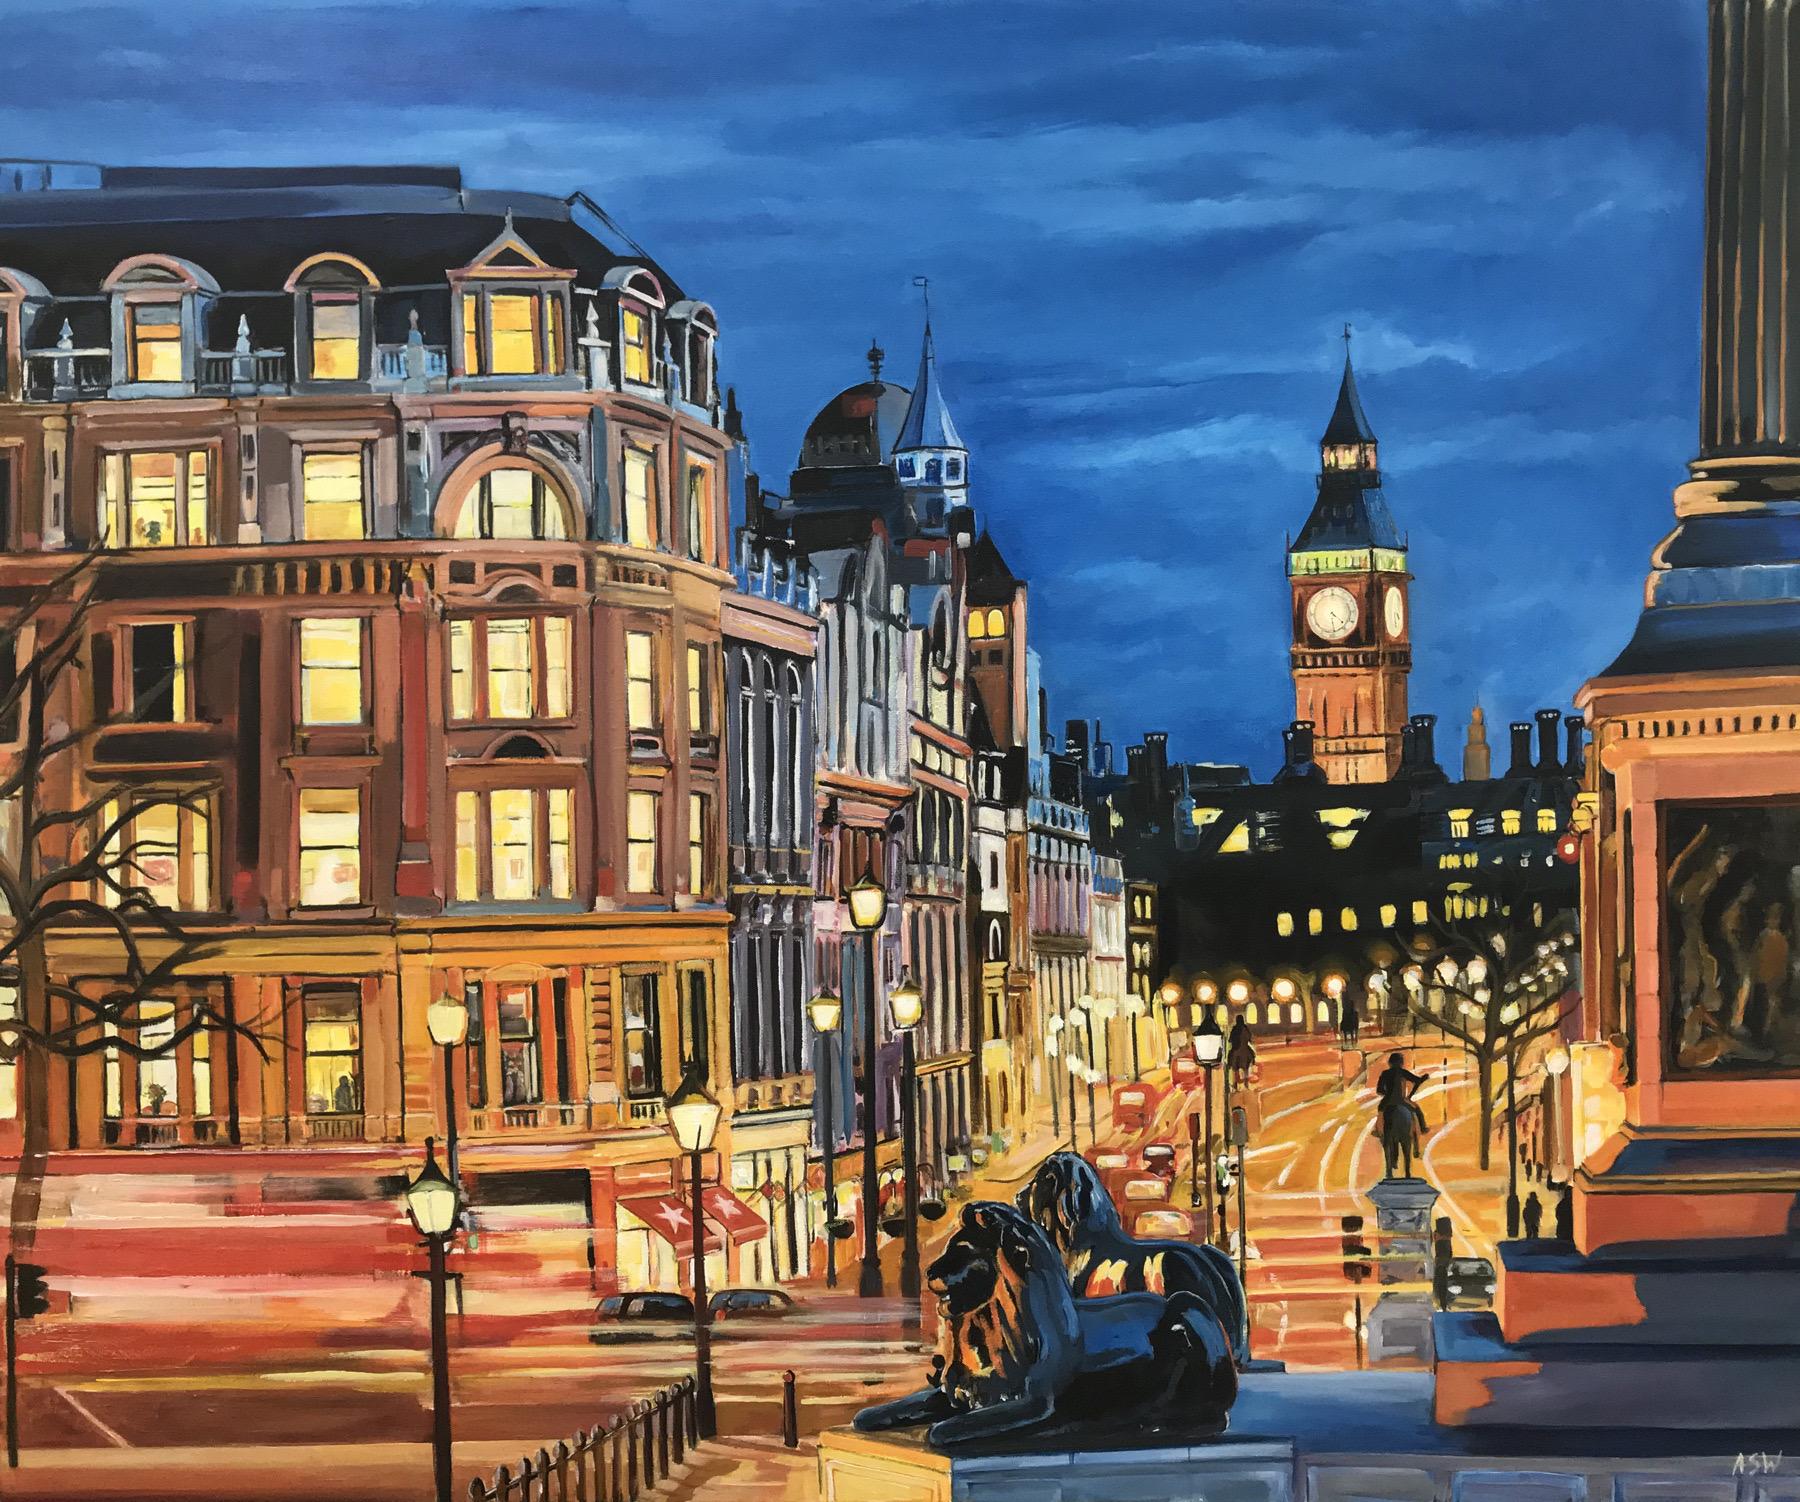 Gravure en édition limitée de Westminster depuis Trafalgar Square avec Big Ben, Londres, réalisée par Angela Wakefield, artiste britannique de premier plan dans le domaine des paysages urbains.

L'impression mesure 12.5 x 10.5 pouces 
Poids du